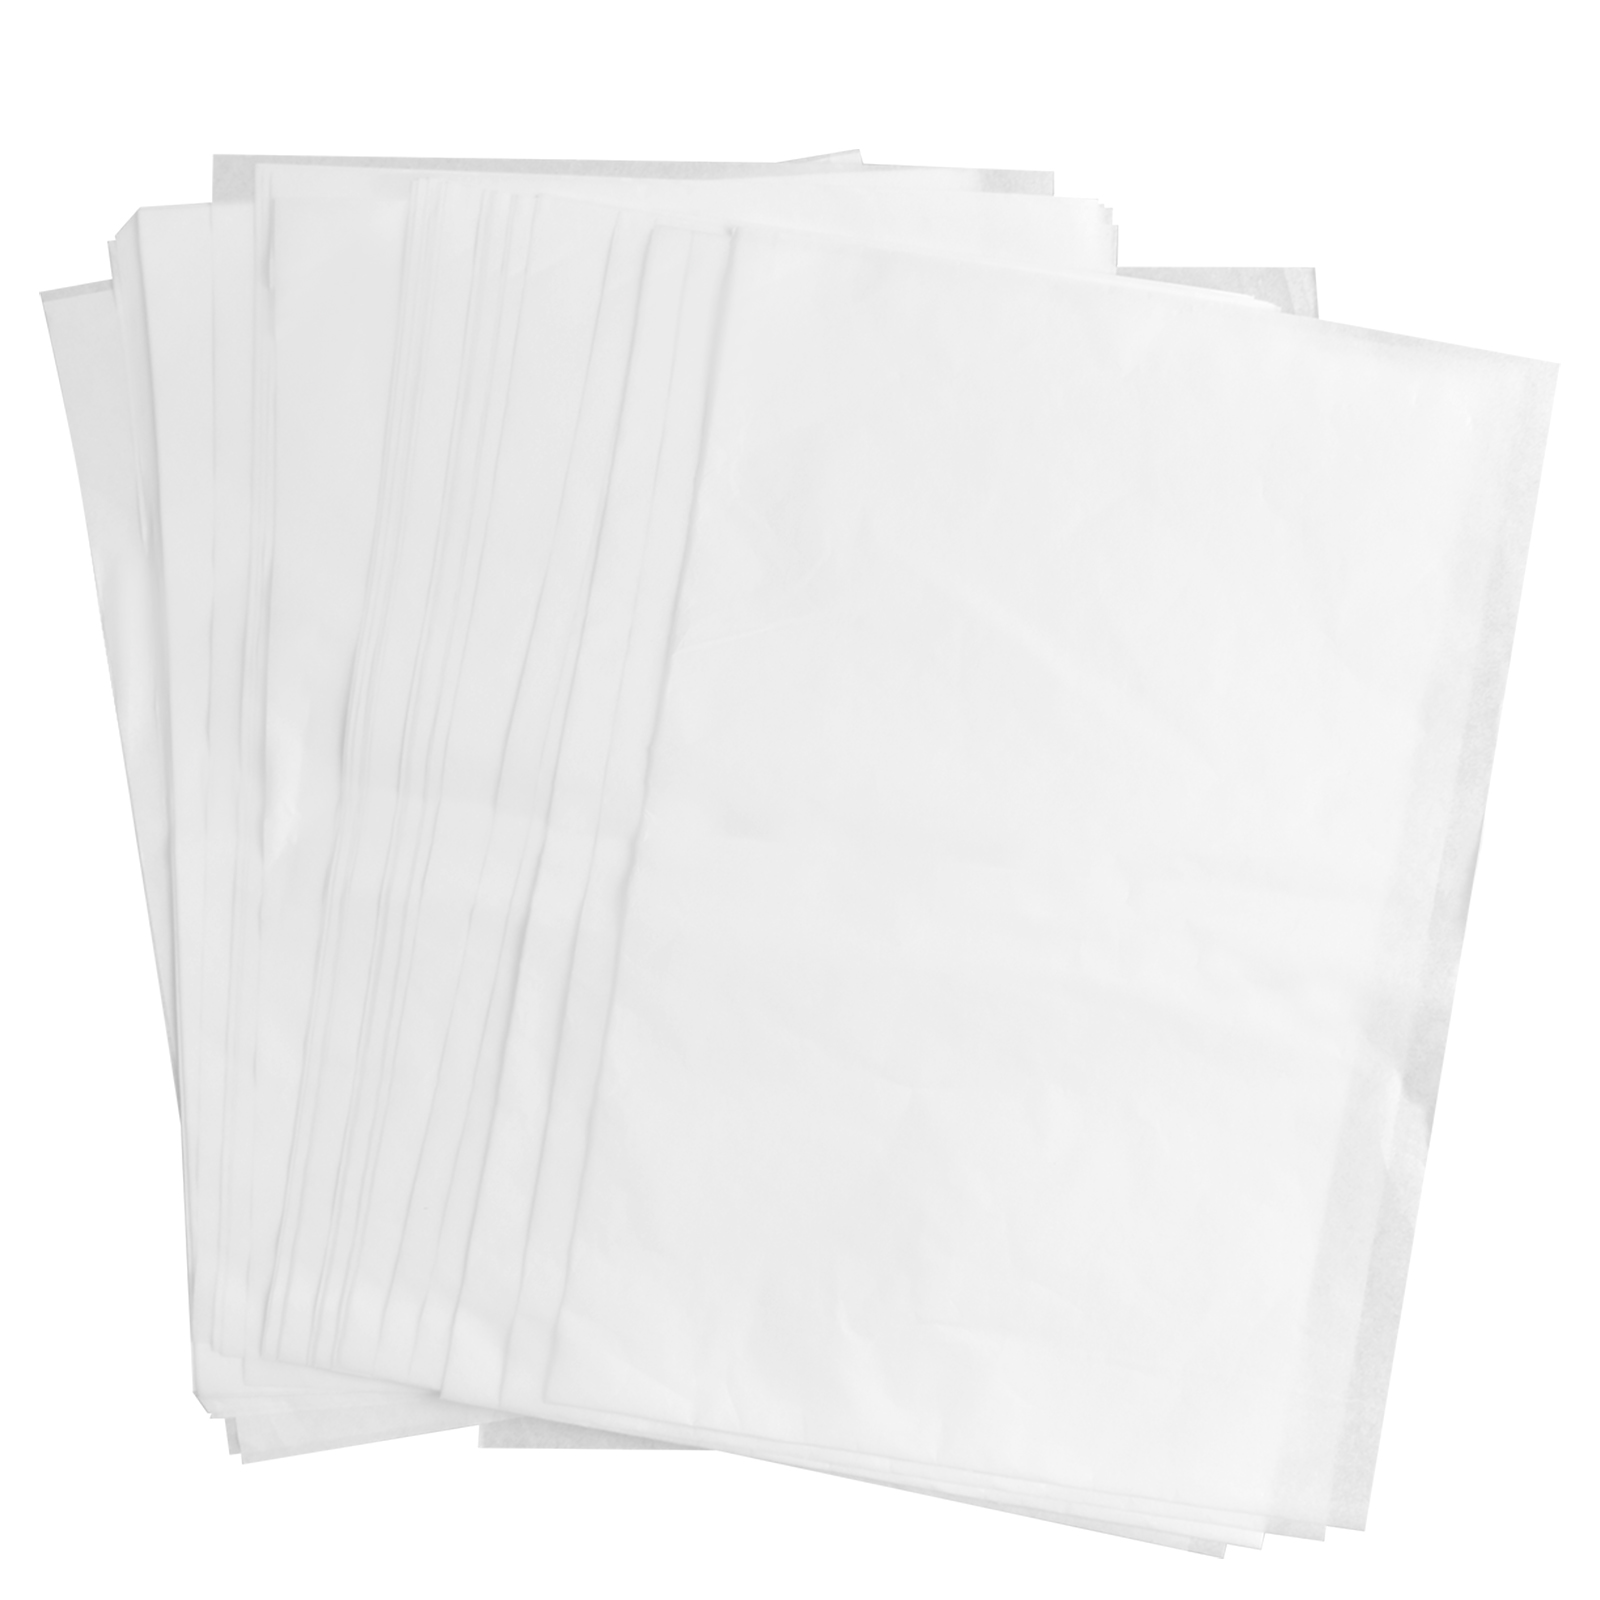 100pcs Translucent Vellum Paper, 5x7 Inch Tracing Comoros